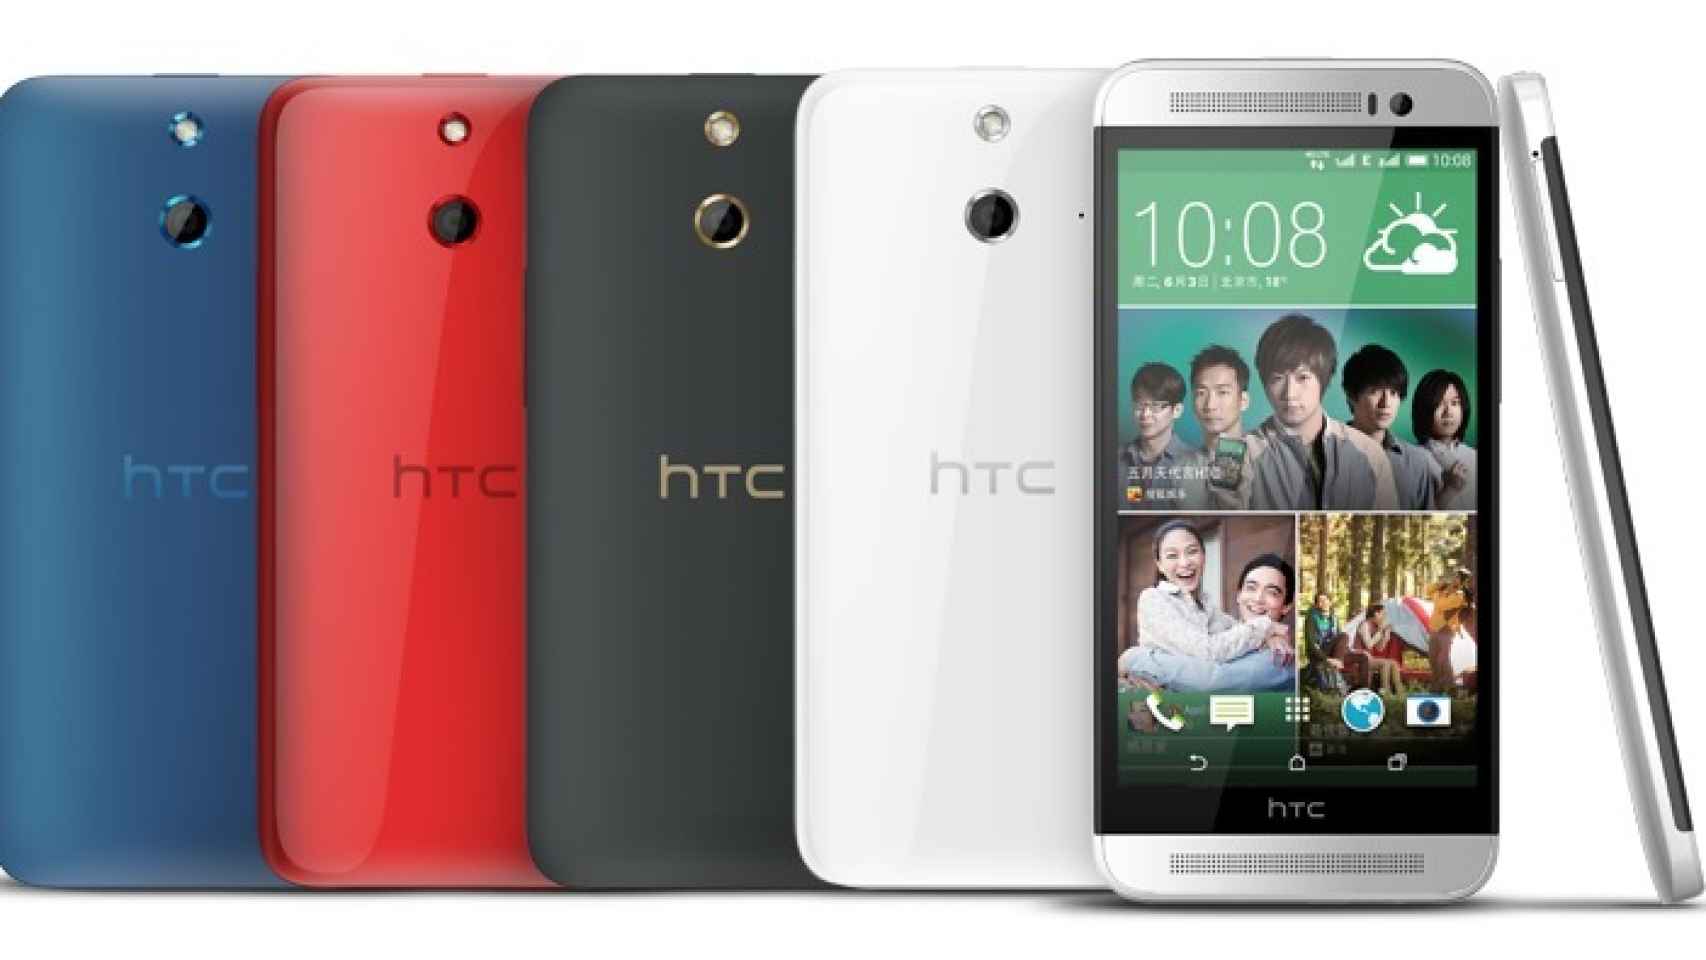 HTC confirma que el HTC One M7 y M8 se actualizarán a Android L